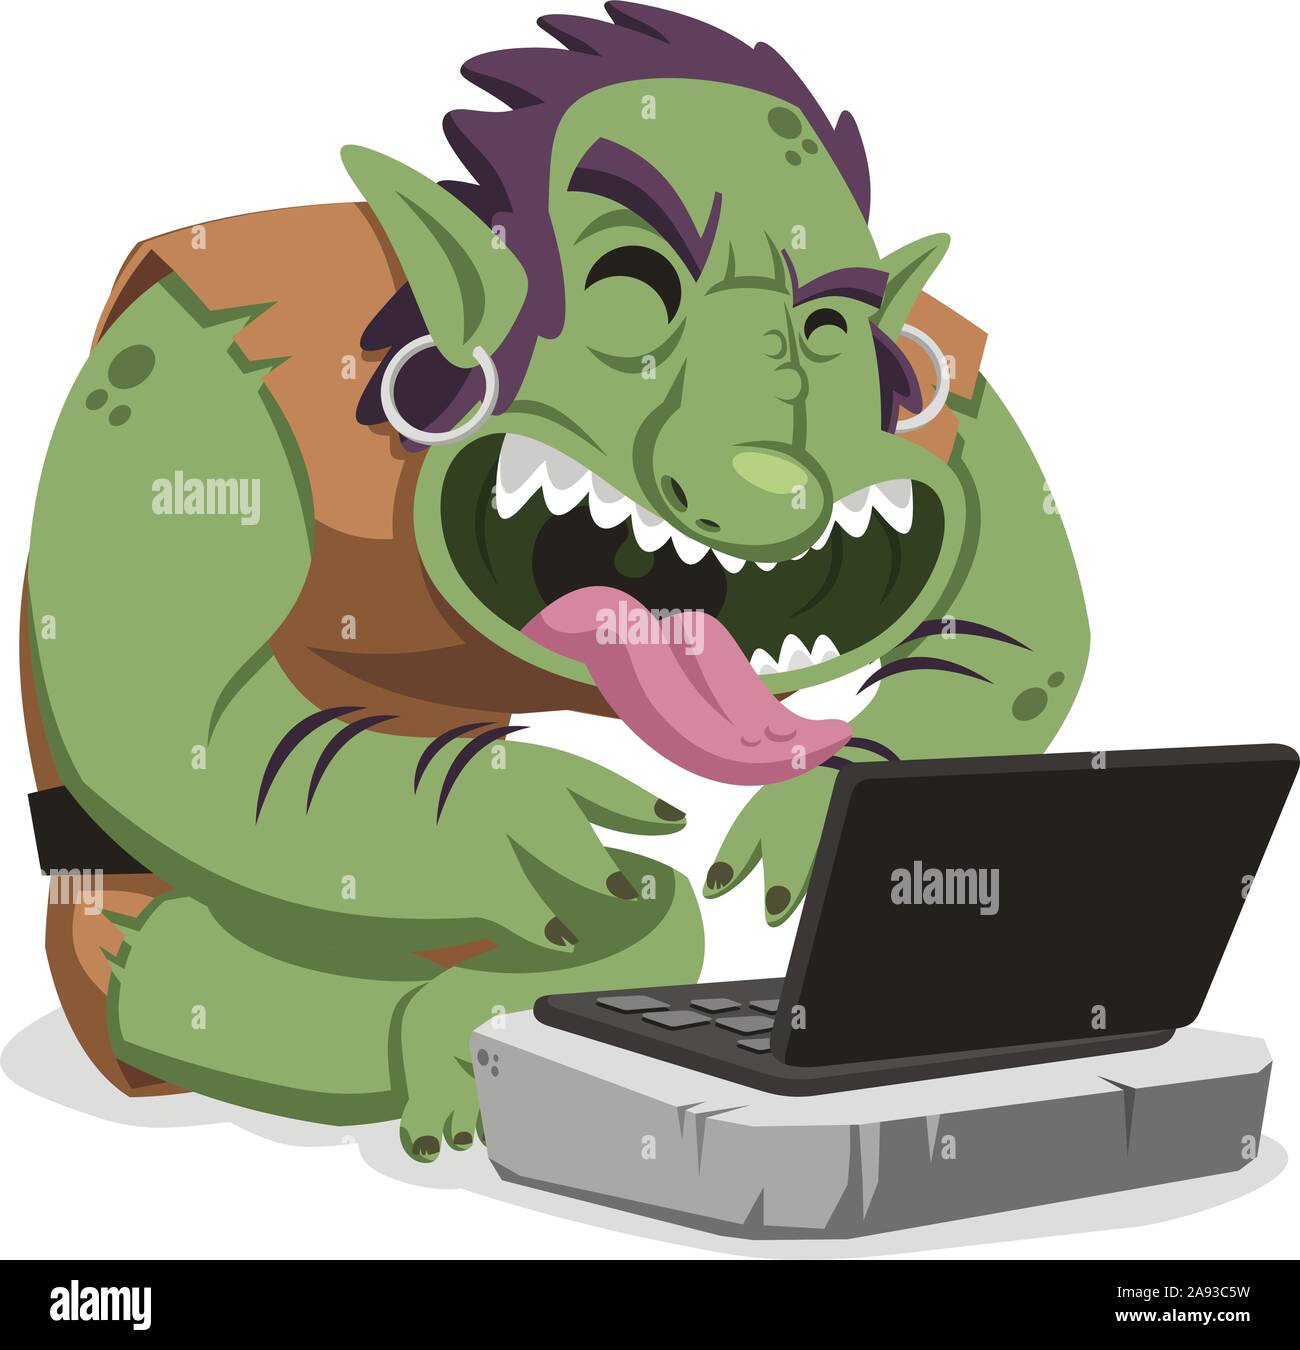 internet troll cartoon illustration Stock Vector